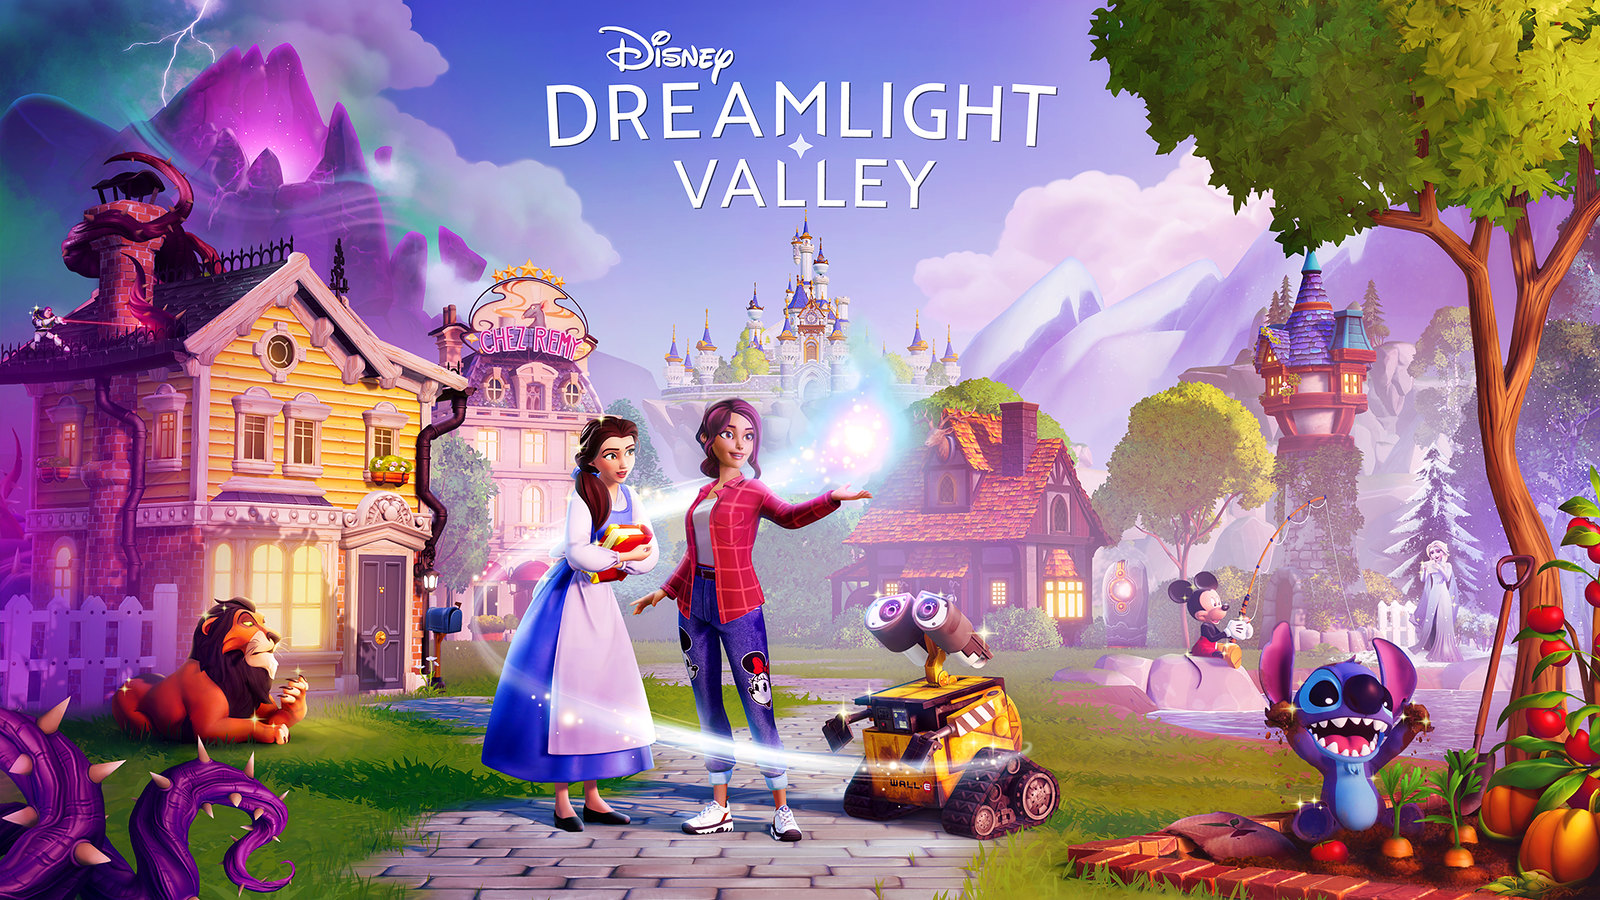 52030036318 afc2f5818d h - Disney Dreamlight Valley erscheint 2022 für PS5 und PS4